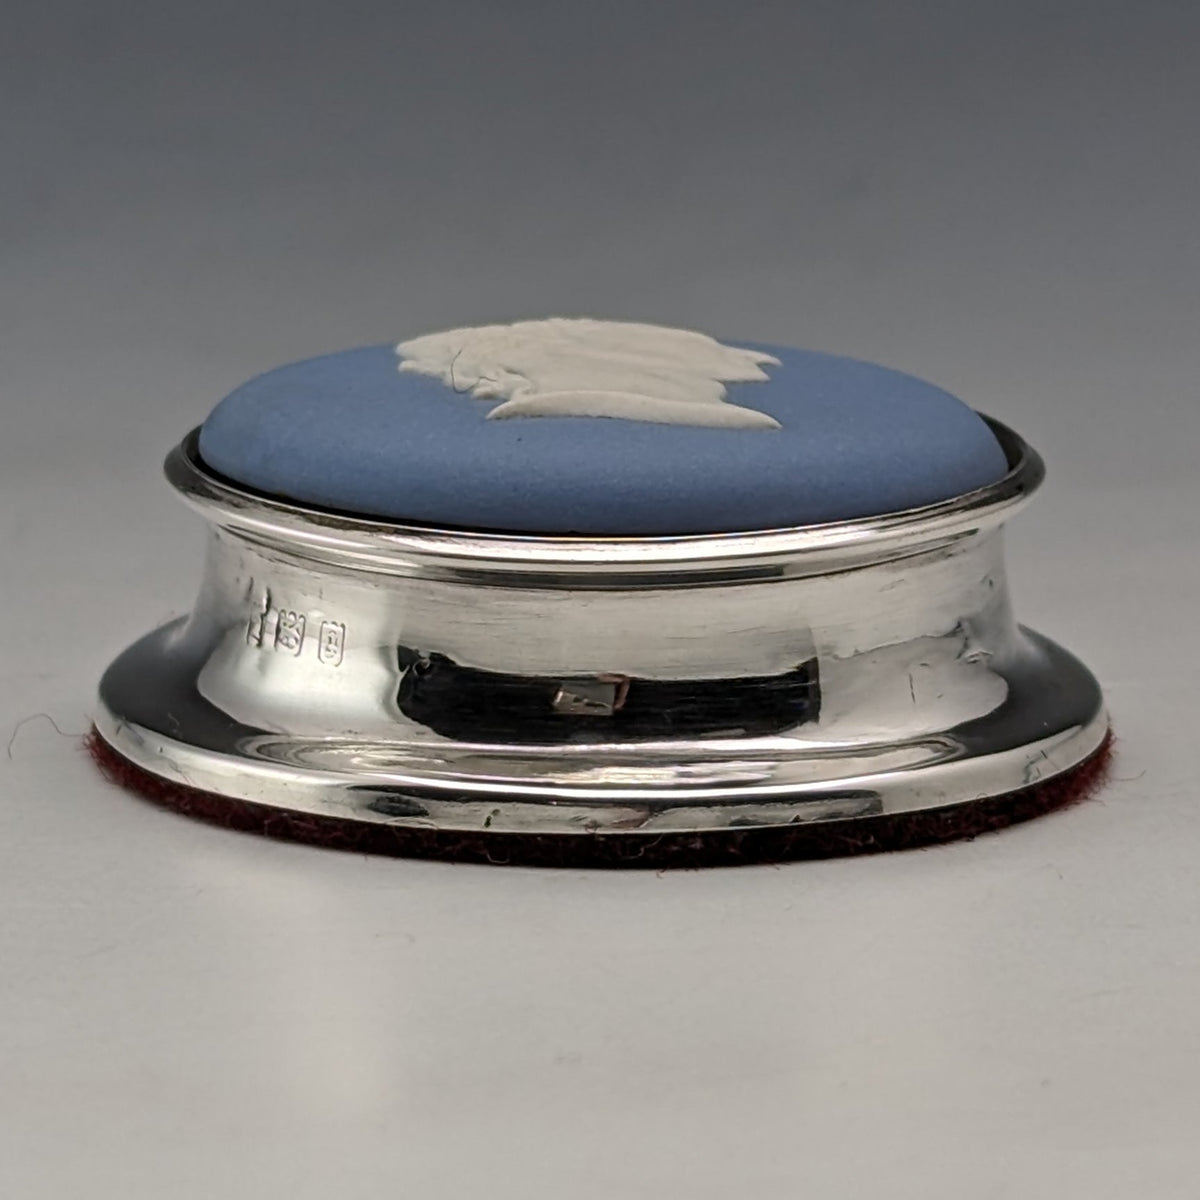 目立った傷や汚れのない美品機能1921年 英国アンティーク ウェッジウッド ジャスパーウェア製 ペーパーウェイト 純銀装飾